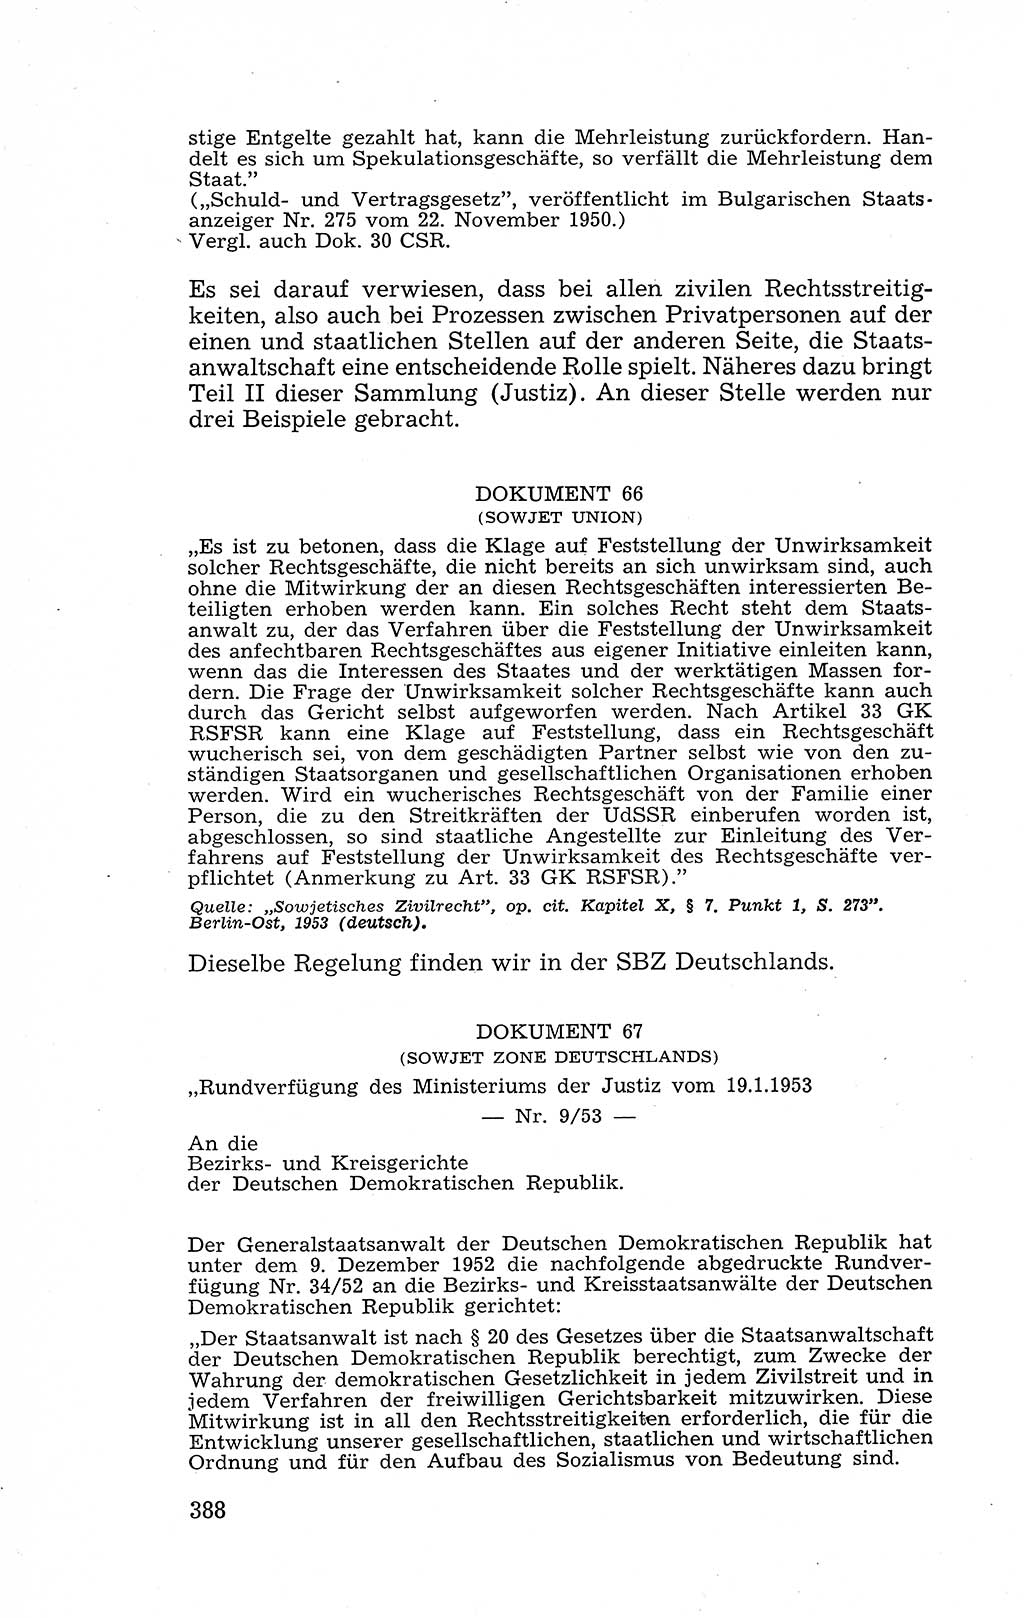 Recht in Fesseln, Dokumente, Internationale Juristen-Kommission [Bundesrepublik Deutschland (BRD)] 1955, Seite 388 (R. Dok. IJK BRD 1955, S. 388)